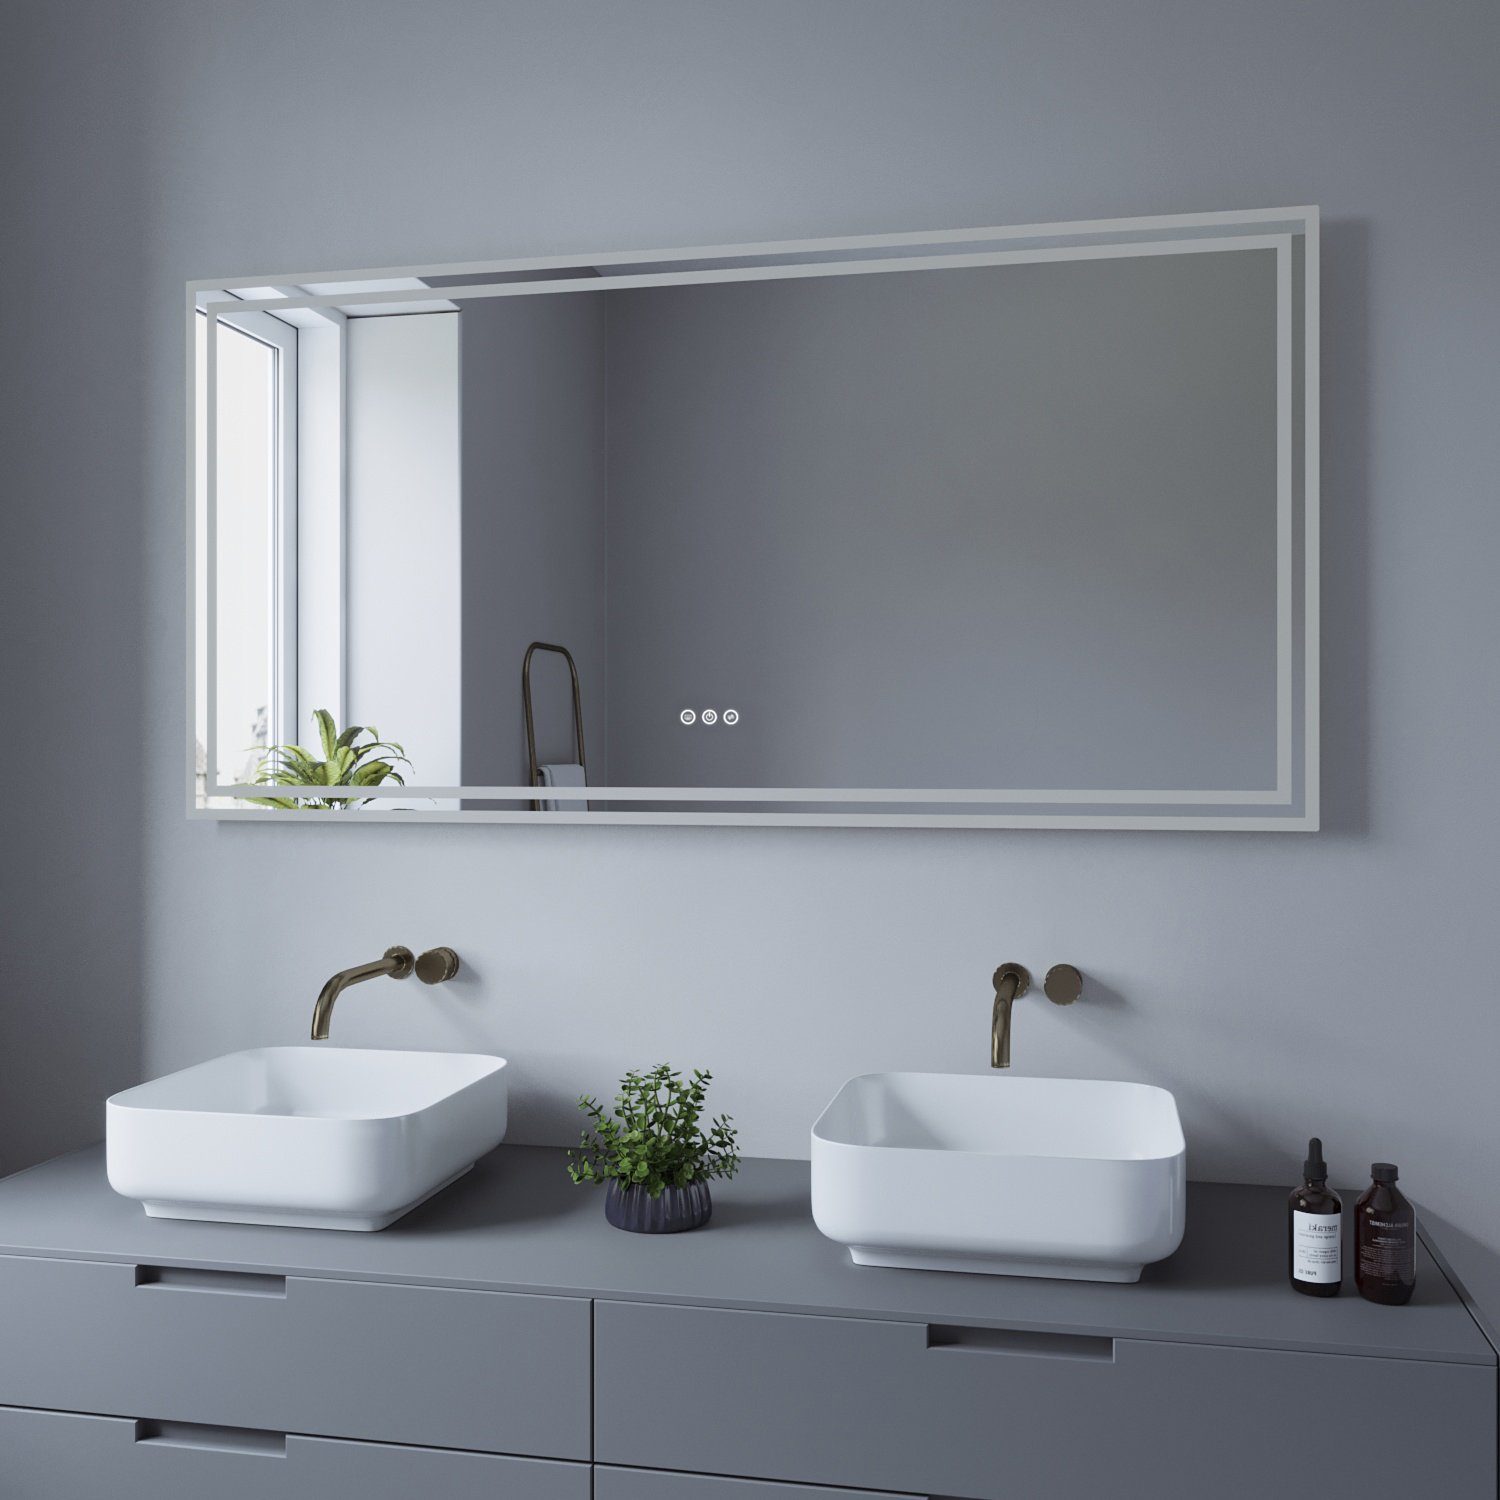 Großer Badspiegel Badezimmer 140x70 AQUALAVOS Wandspiegel Energiesparend, LED & Warmweiß Beleuchtung, 3000K, Badspiegel mit Touchschalter 6400K cm Kaltweiß